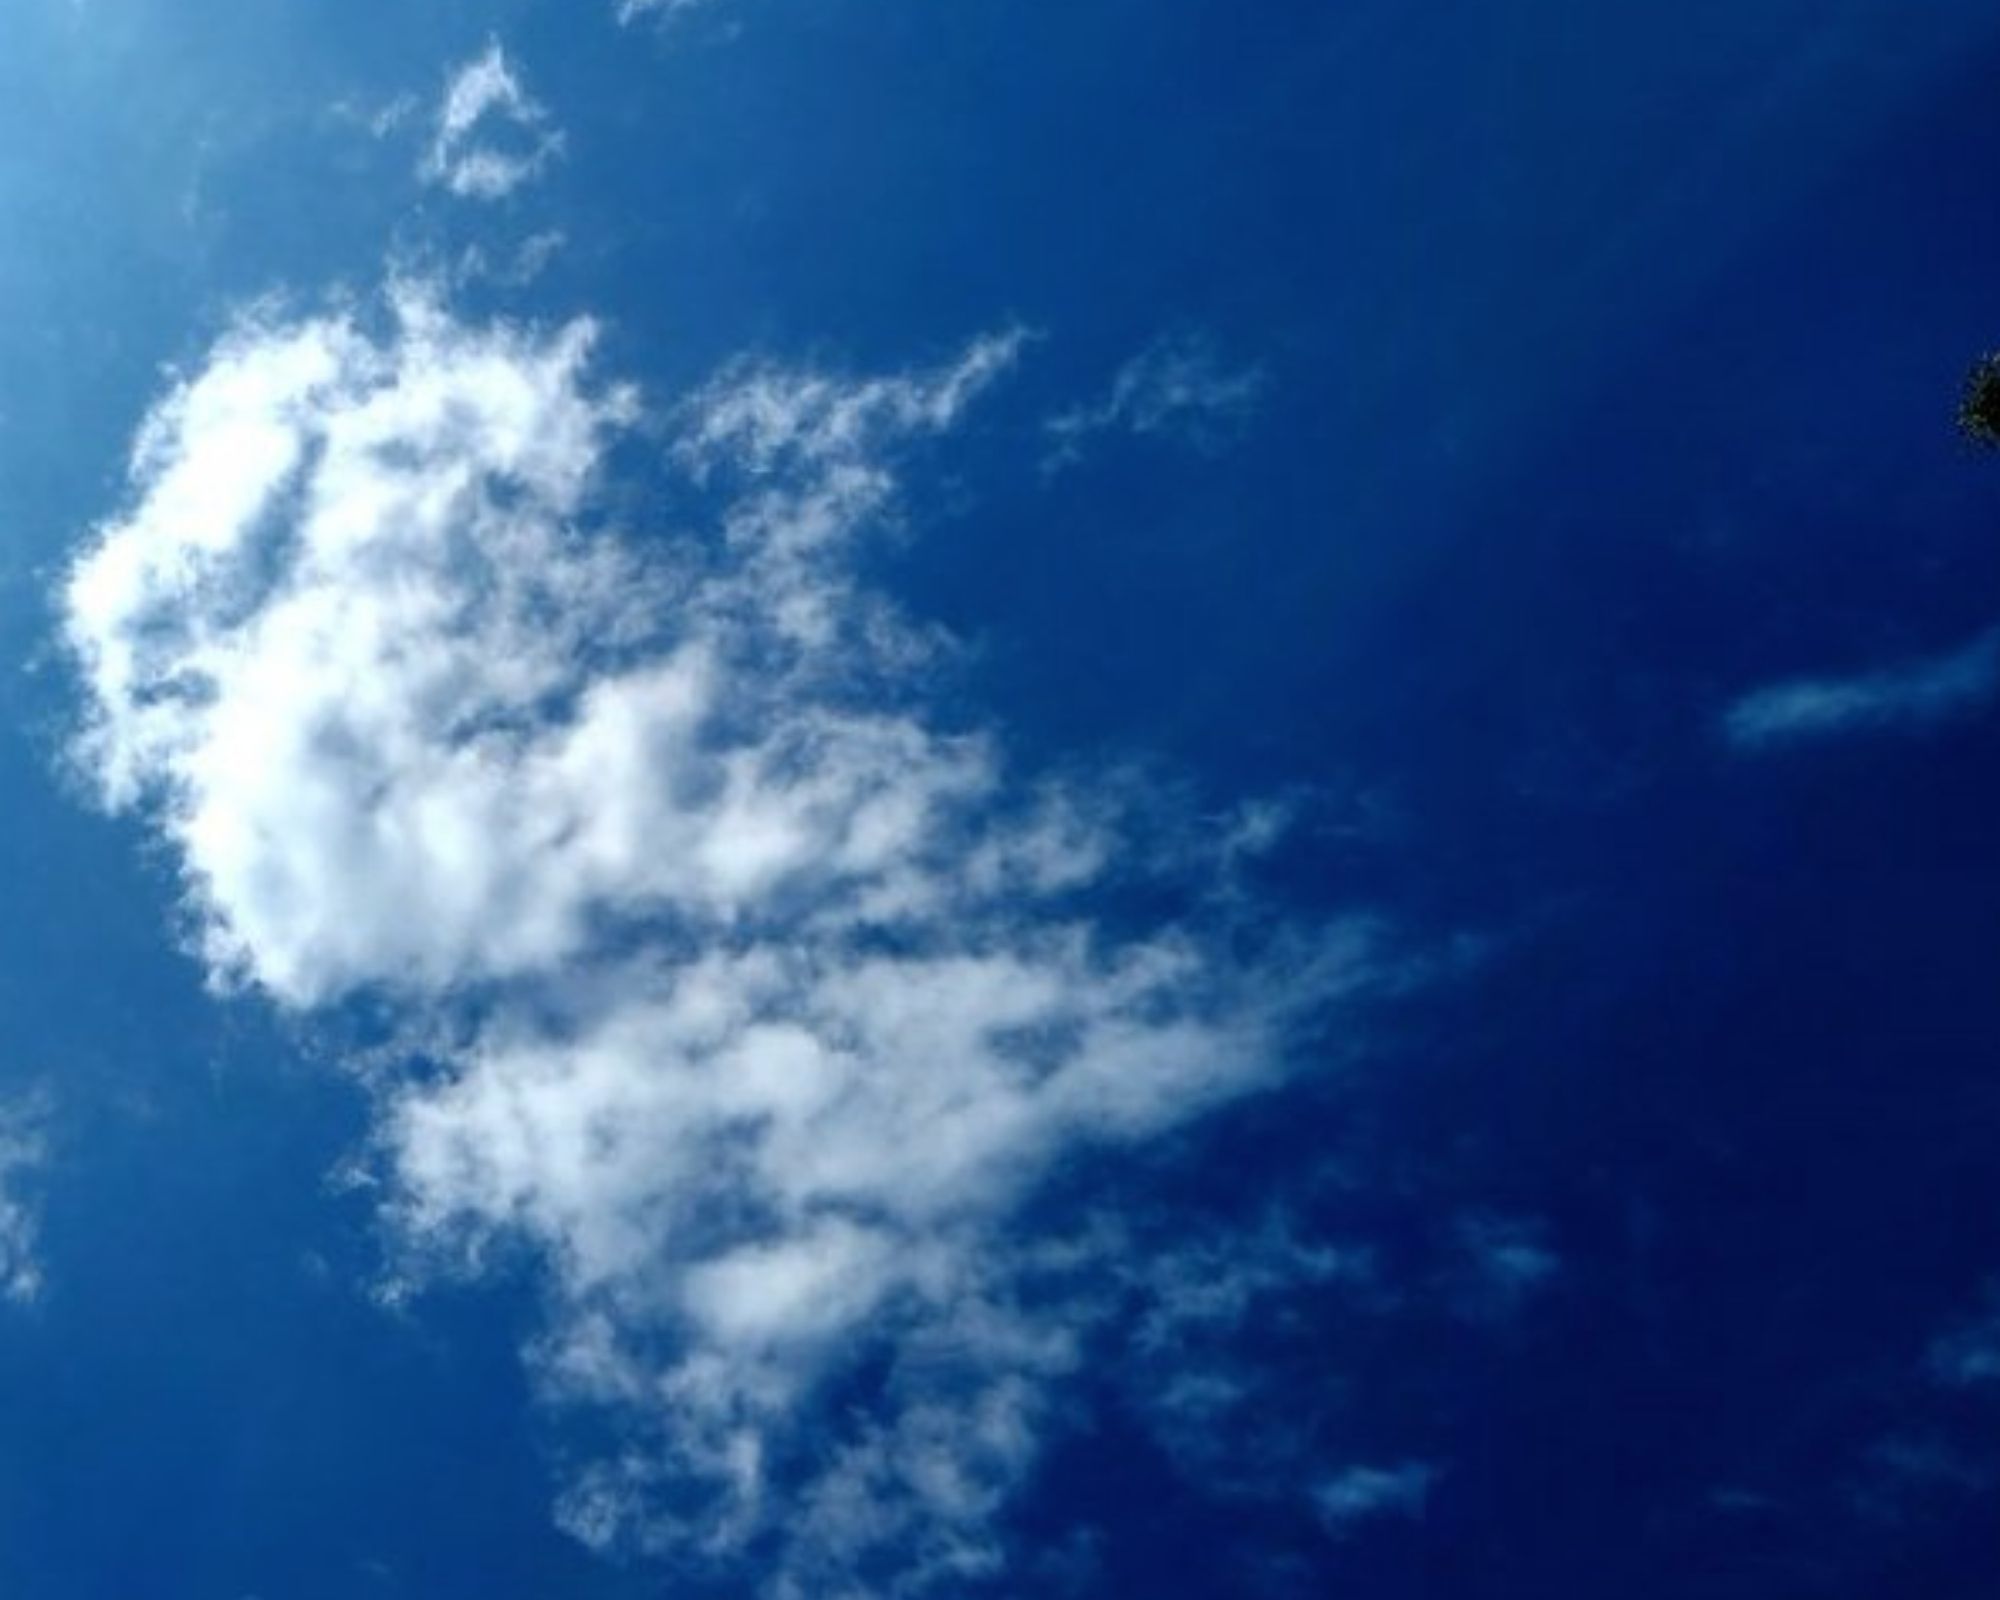 Blue sky with wispy clouds